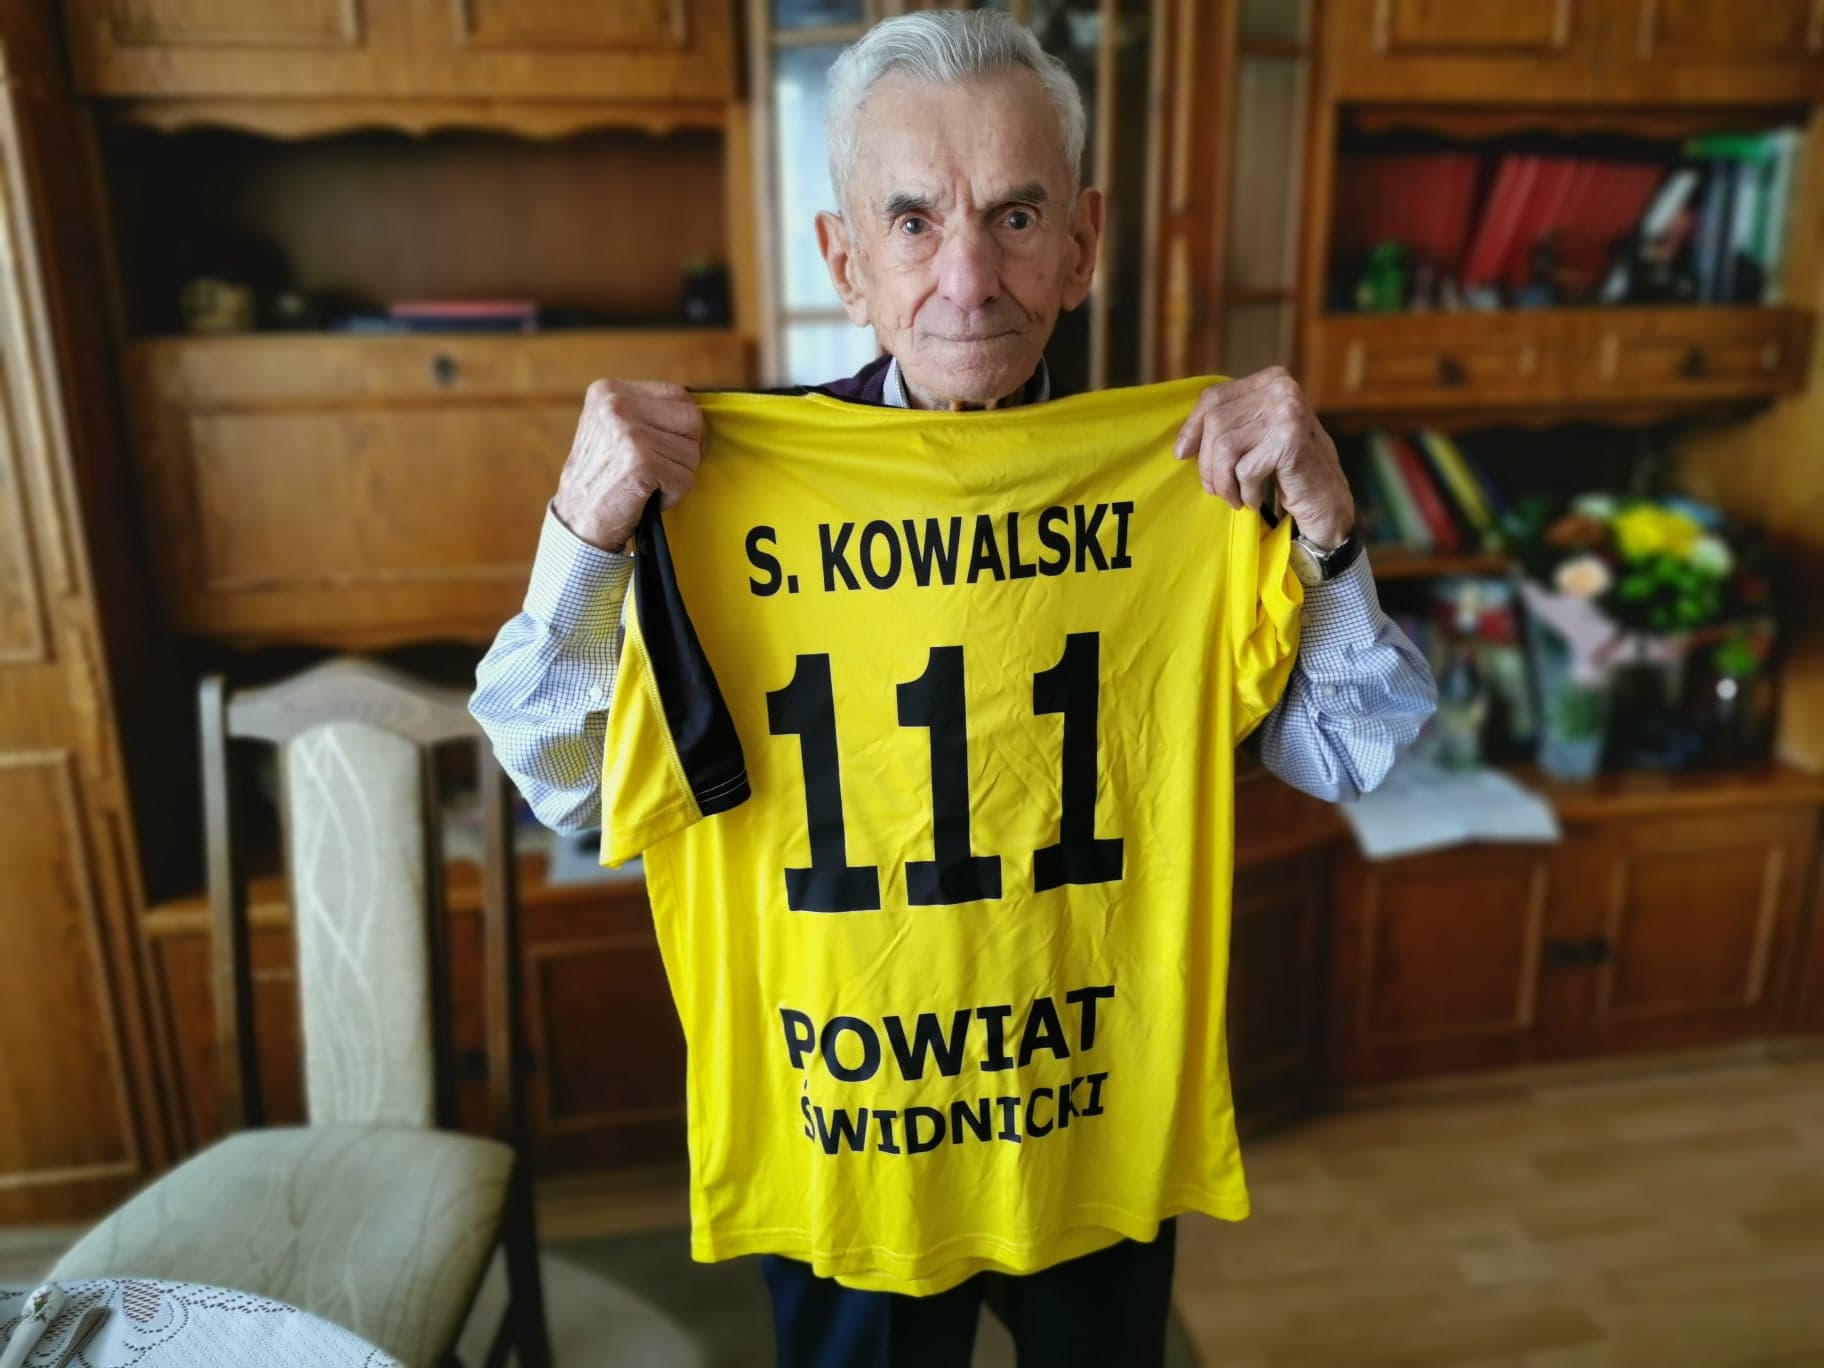 Stanisław Kowalski - ponad 110 letni mężczyzna, zmarł 5 kwietnia 2022 r.